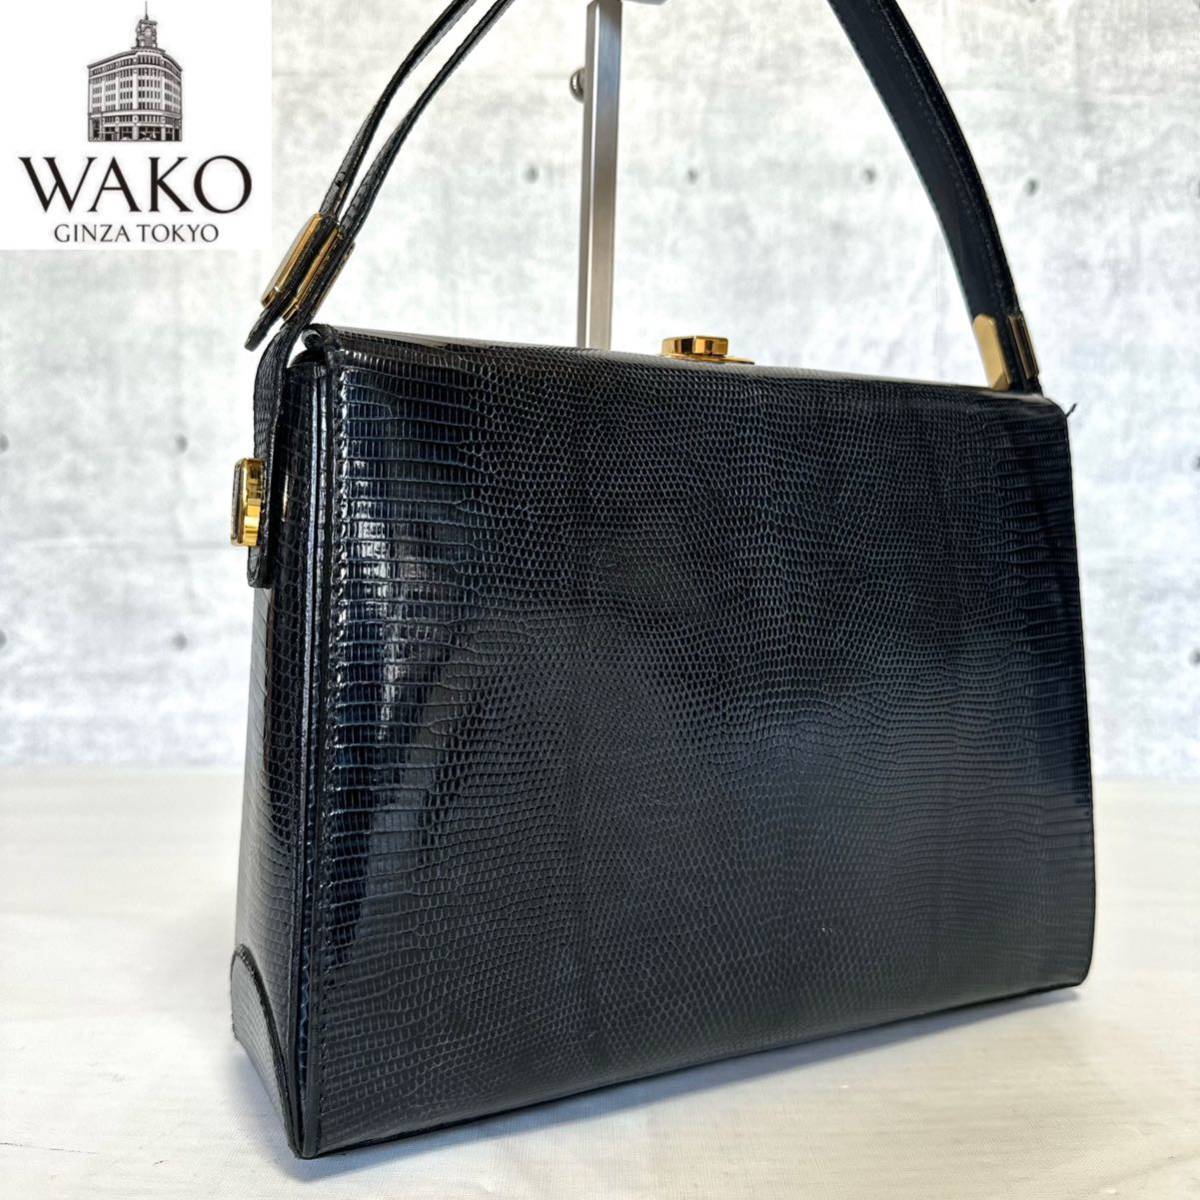 良品 WAKO ワコウ 銀座 和光 リザード革 レザー ゴールド金具 鞄 ハンドバッグ トートバッグ ショルダーバッグ